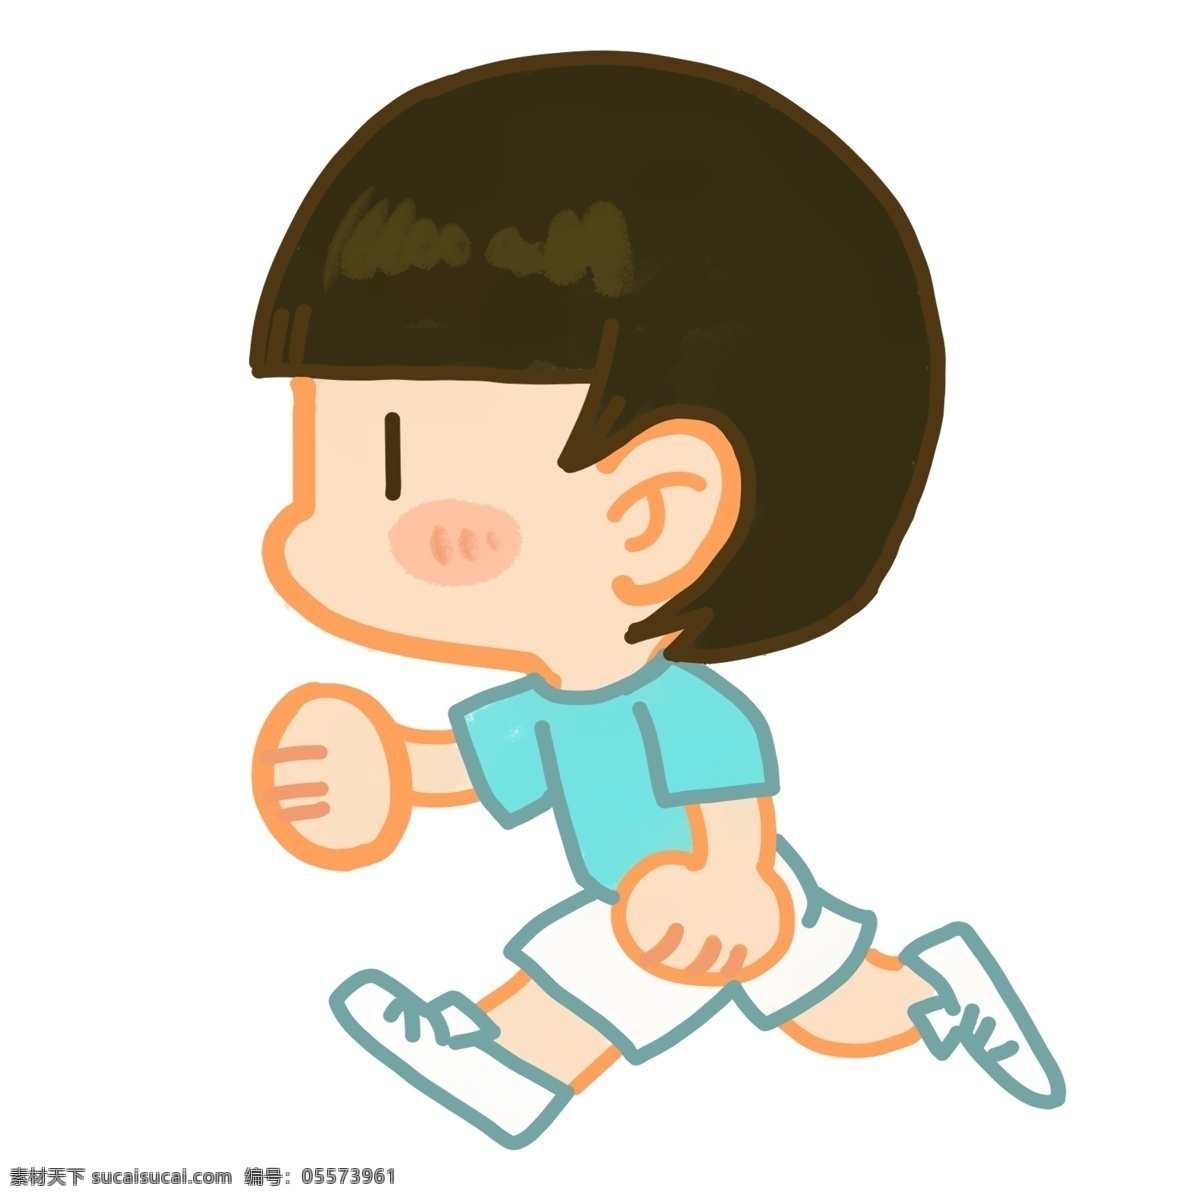 运动 健身 跑步 插画 跑步的男孩 卡通插画 健身插画 运动插画 运动健身 运动强身 爱运动的男孩